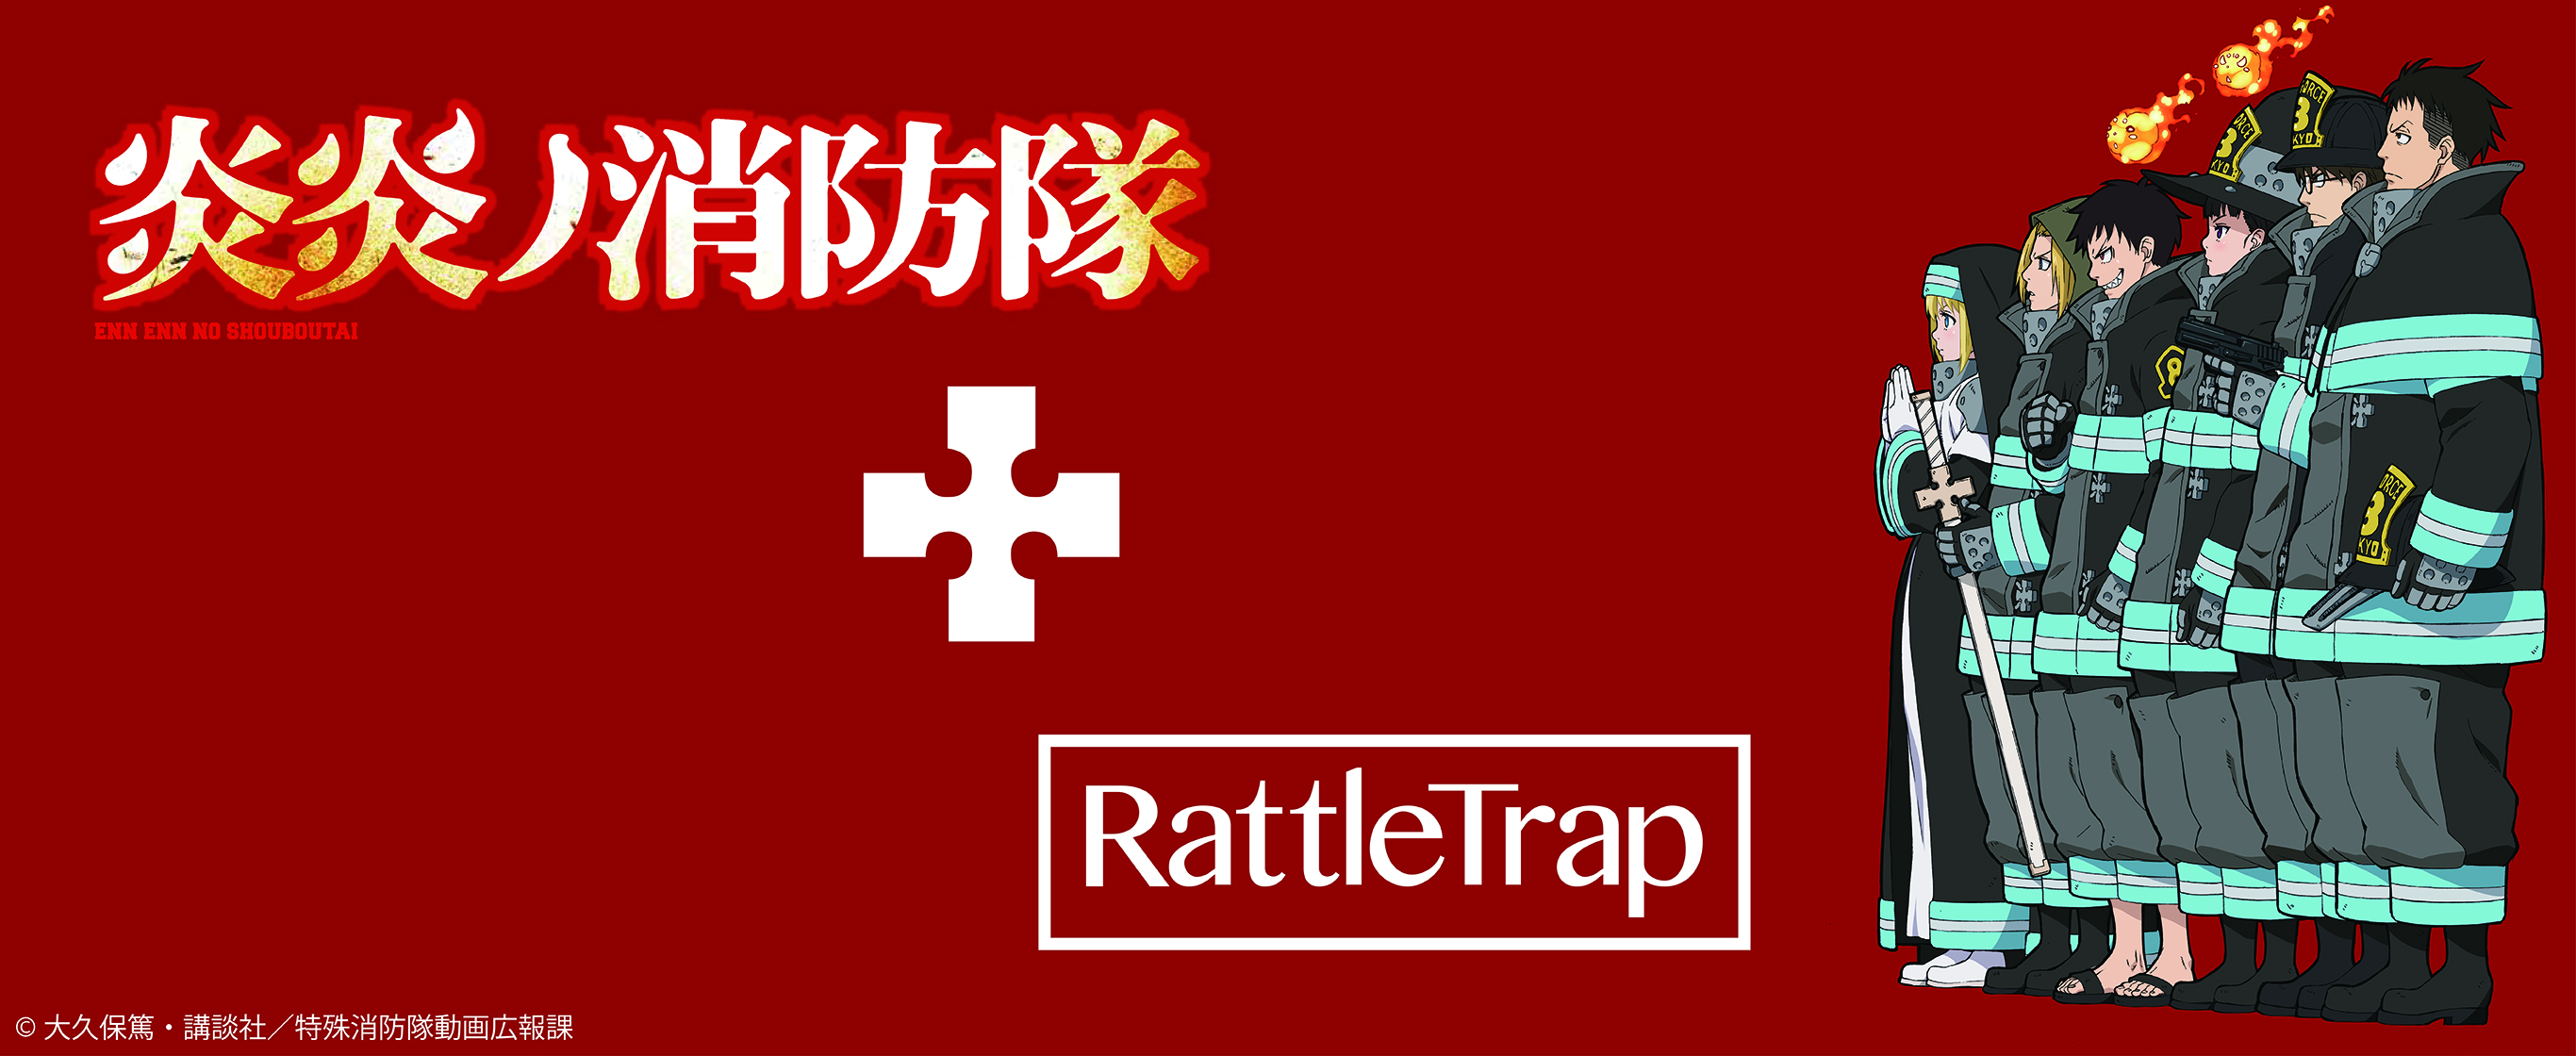 「ラトルトラップ」がTVアニメ『炎炎ノ消防隊』コラボアイテムを発売